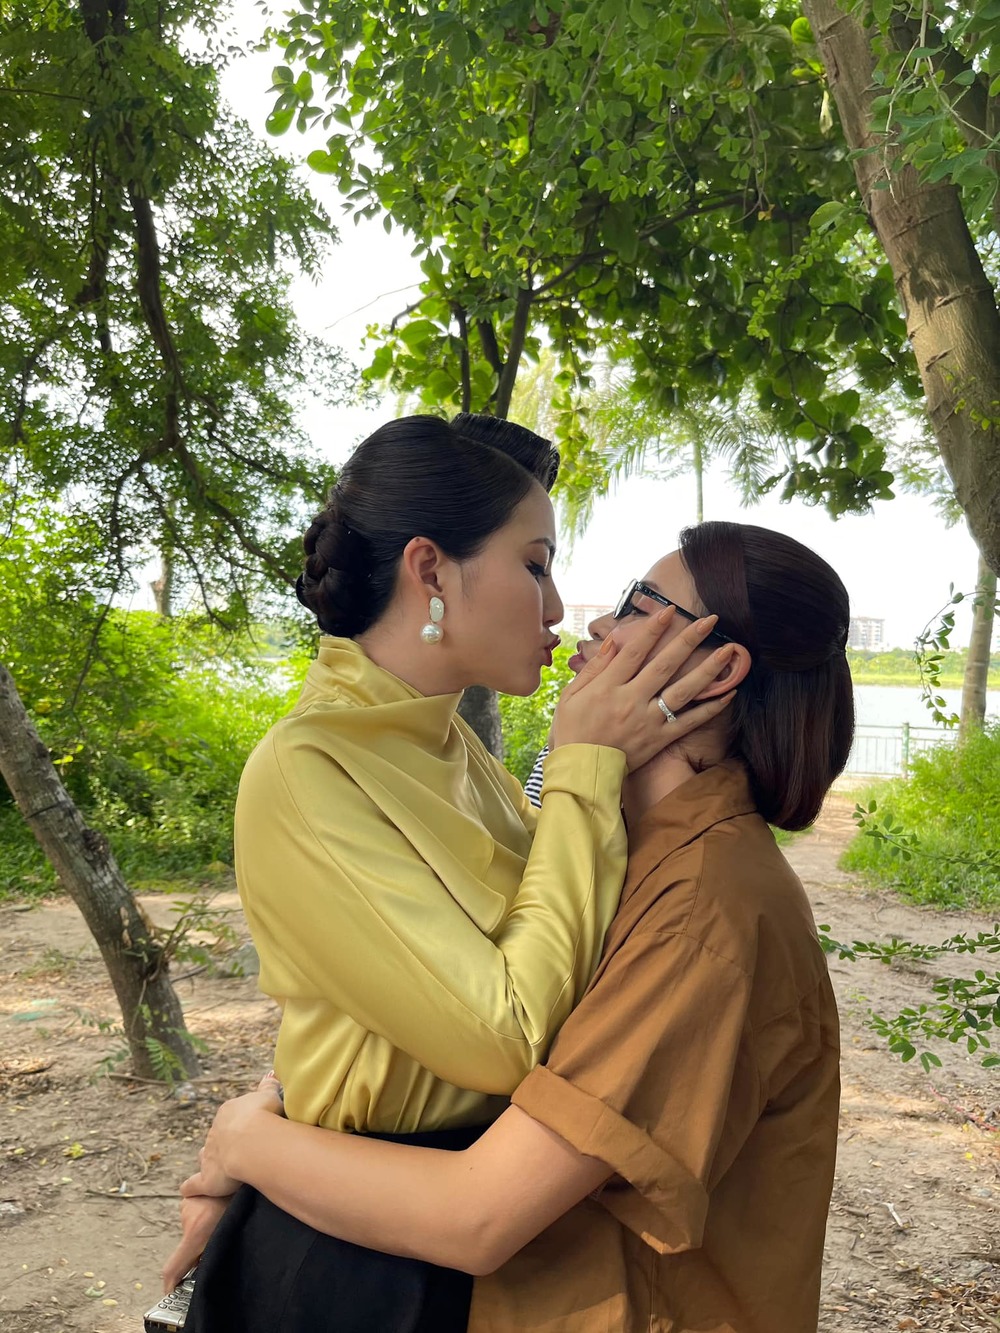  
Khoảnh khắc tình cảm ngọt lịm mà Ngọc Lan và Lương Thu Trang dành cho nhau ở hậu trường gây bất ngờ với khán giả. (Ảnh: Facebook Ngọc Lan)